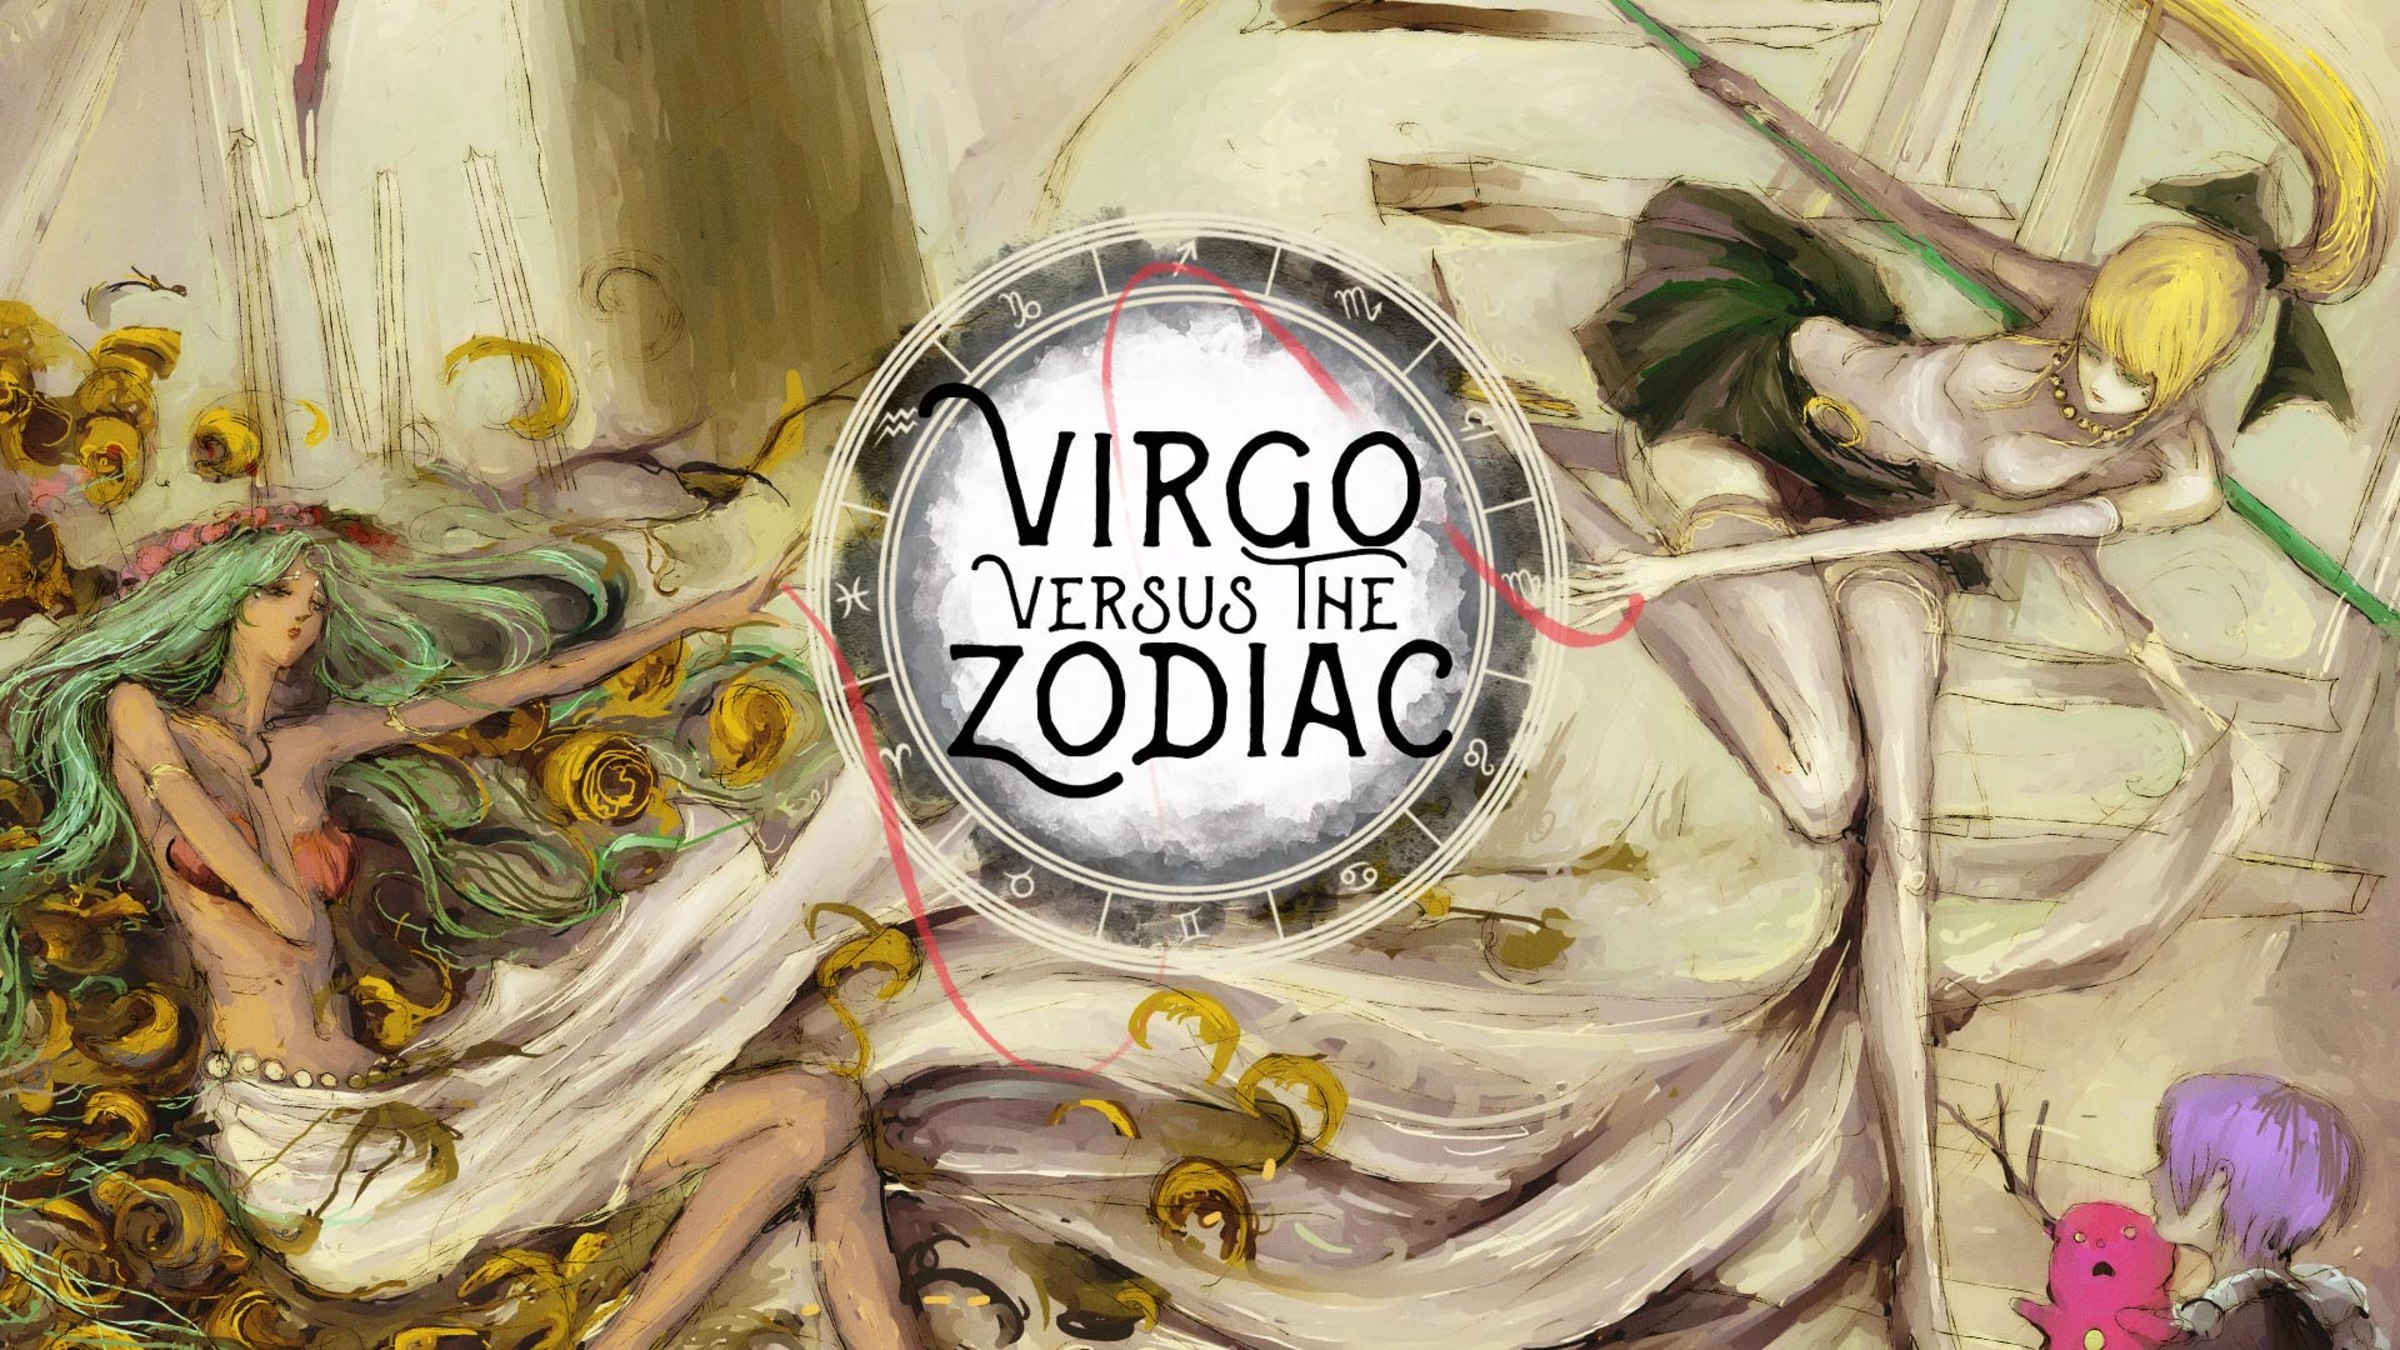 Virgo Versus The Zodiac for Nintendo Switch - Nintendo Official Site